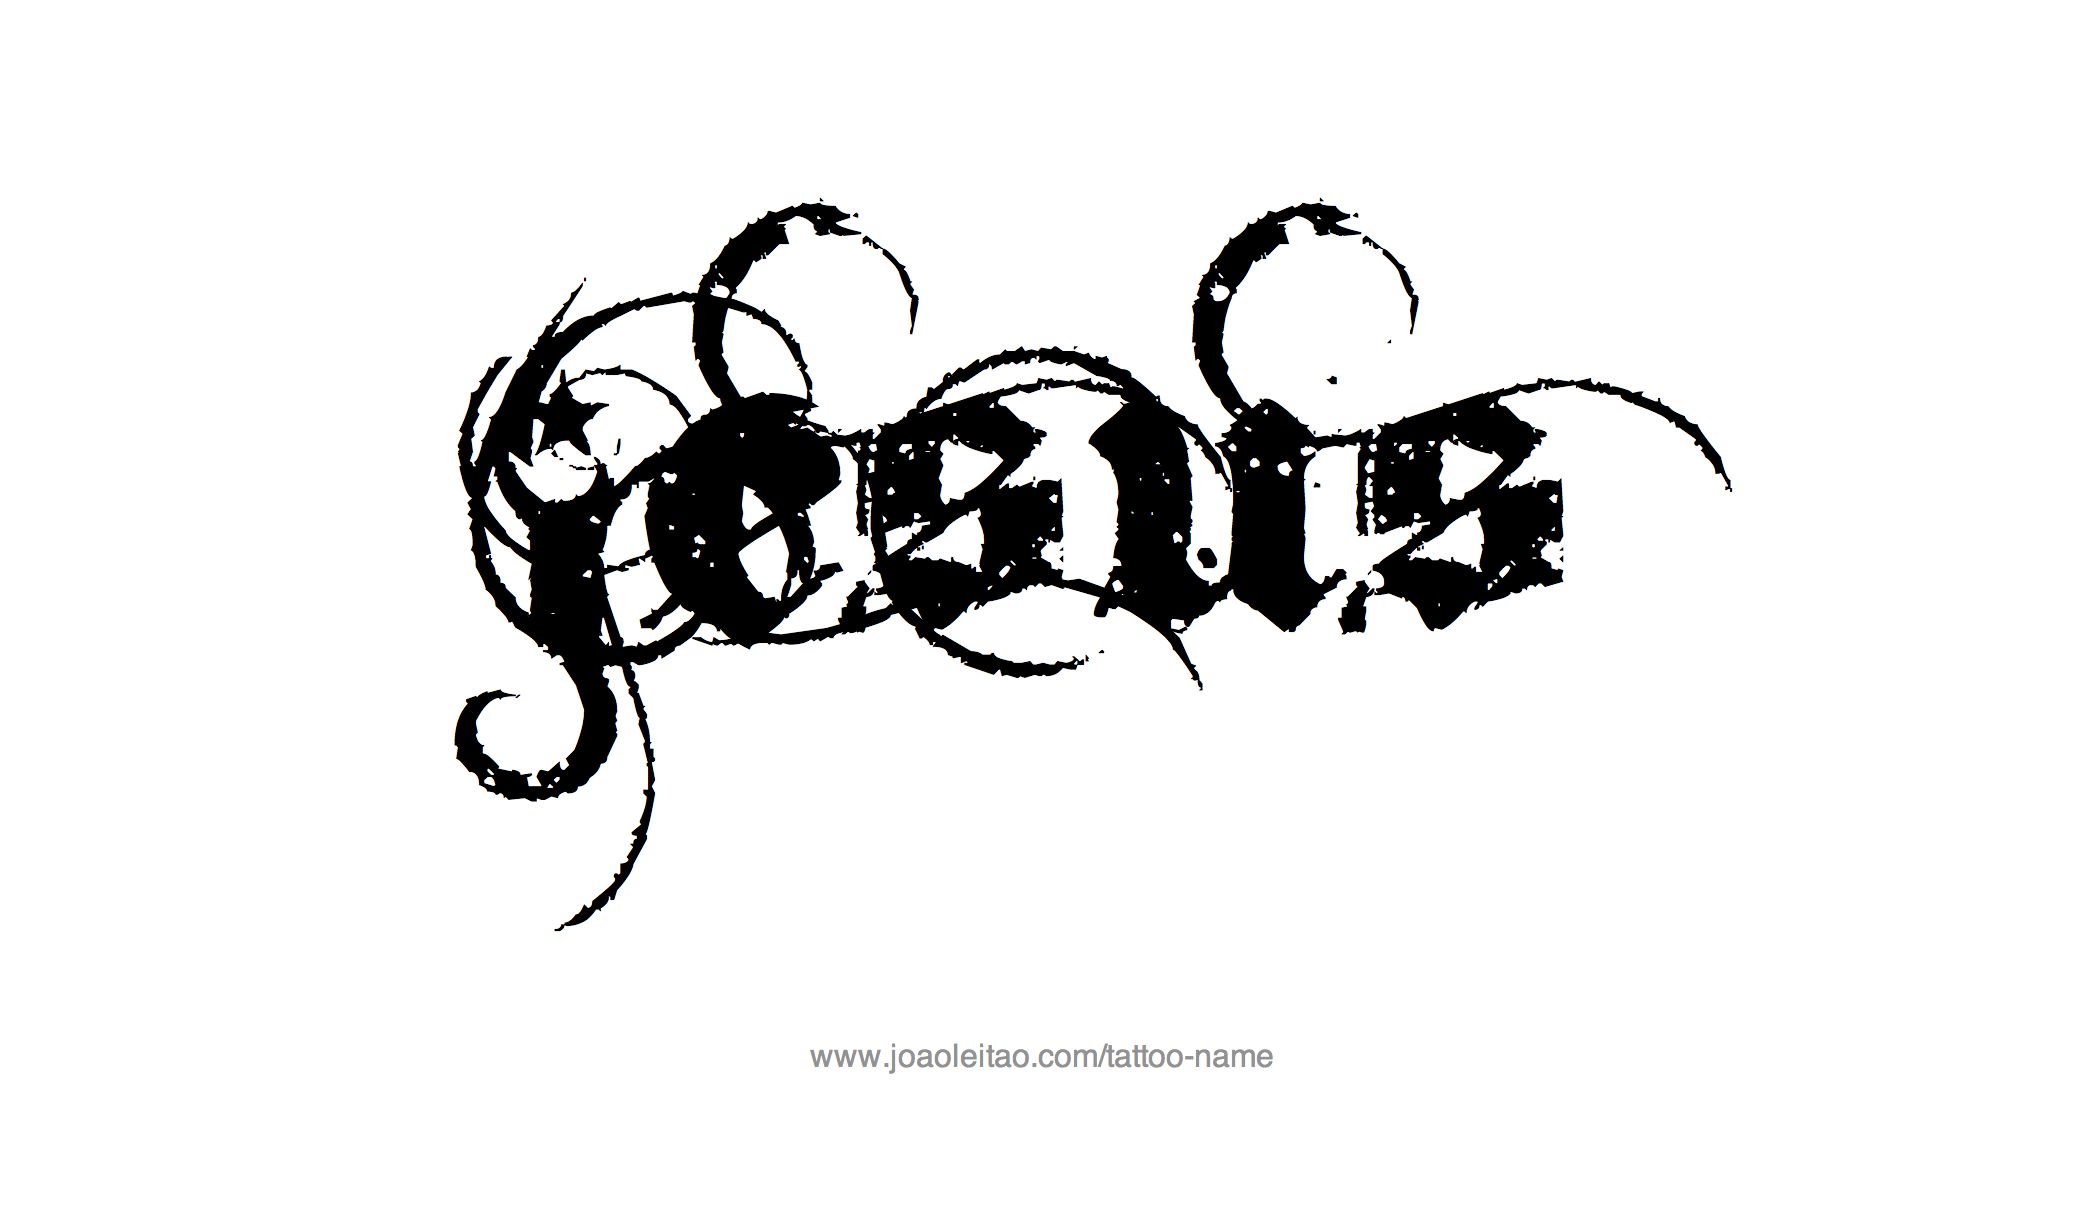 Tattoo Design Name Jesus